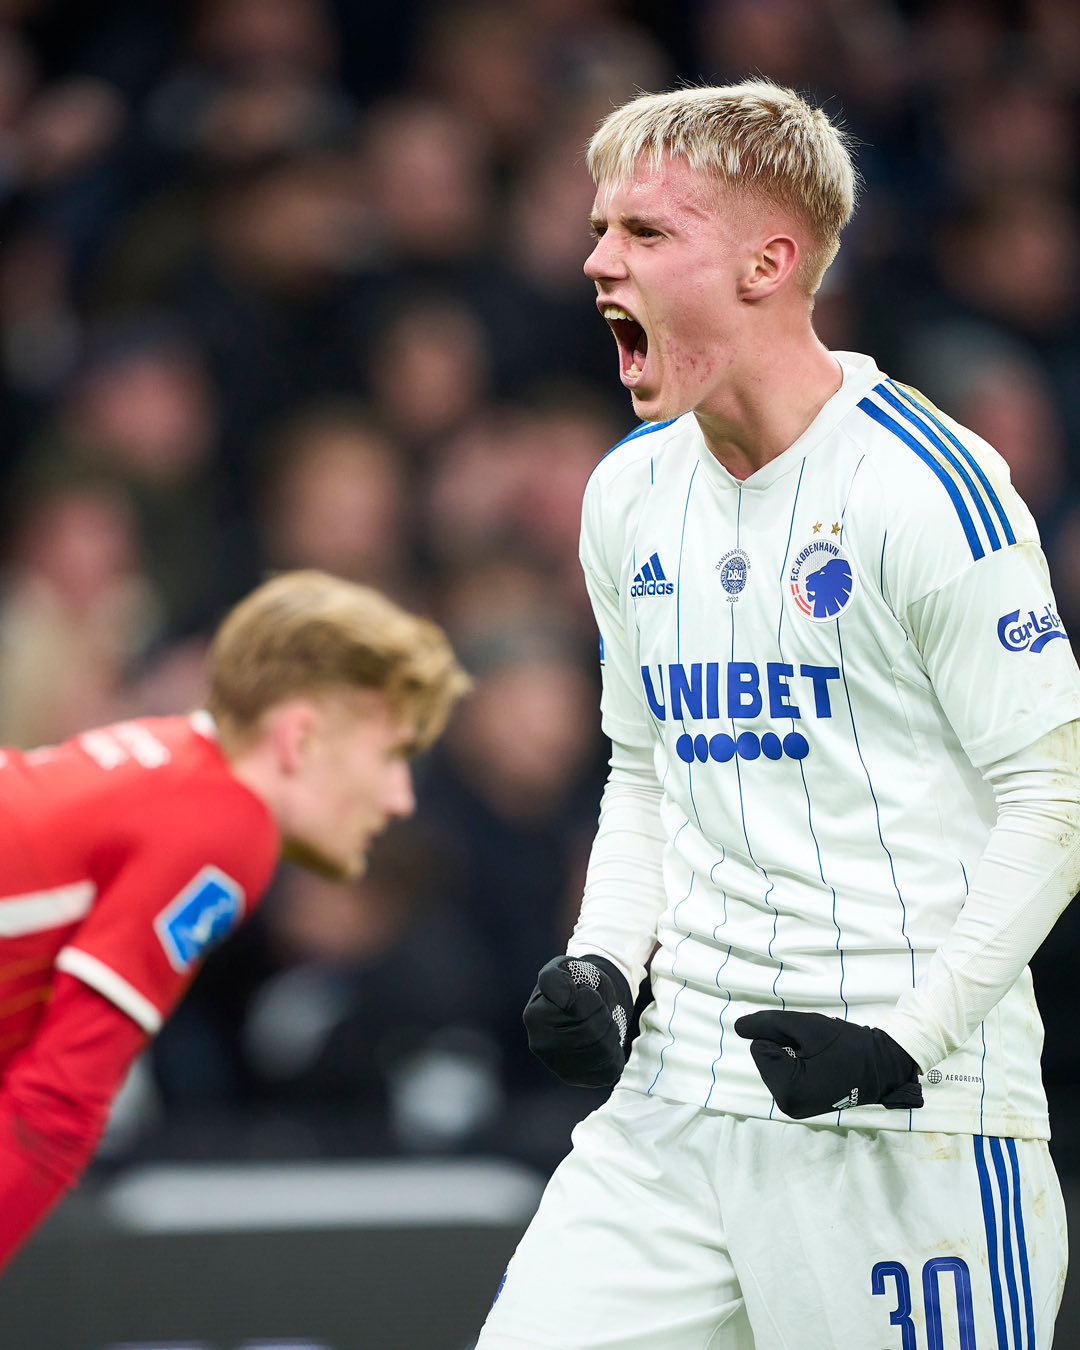 Fußball in Island | Das Geheimnis des Erfolgs | Guide to ...